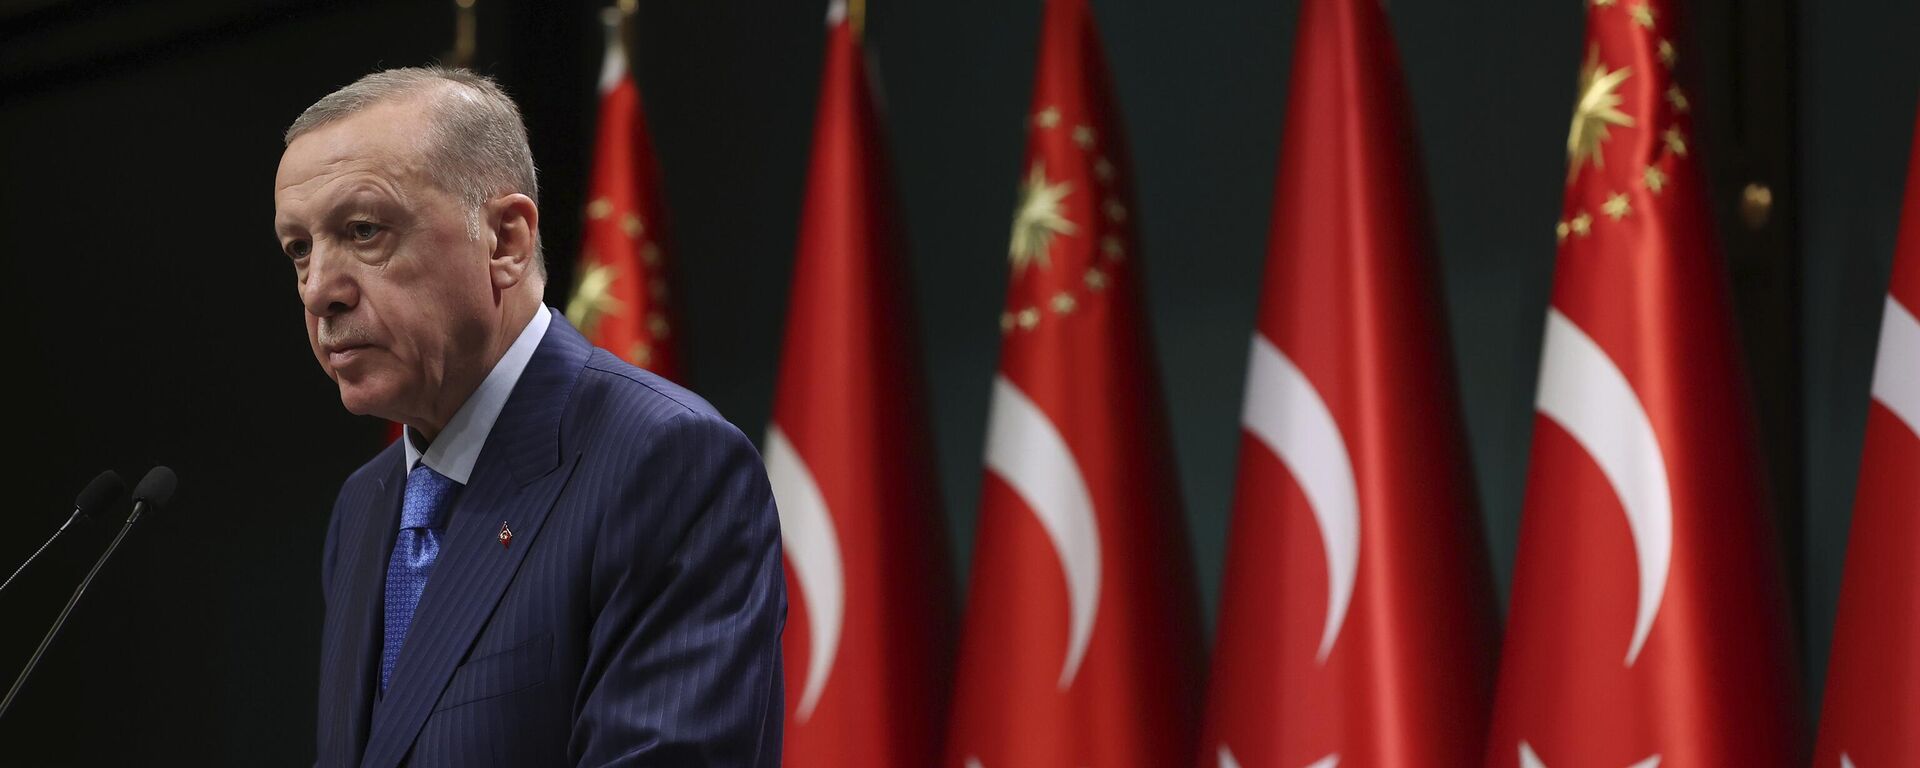 Nesta foto divulgada pela Presidência turca, o presidente da Turquia, Recep Tayyip Erdogan, fala após uma reunião de gabinete em Ancara, Turquia, 23 de janeiro de 2023 - Sputnik Brasil, 1920, 30.03.2023